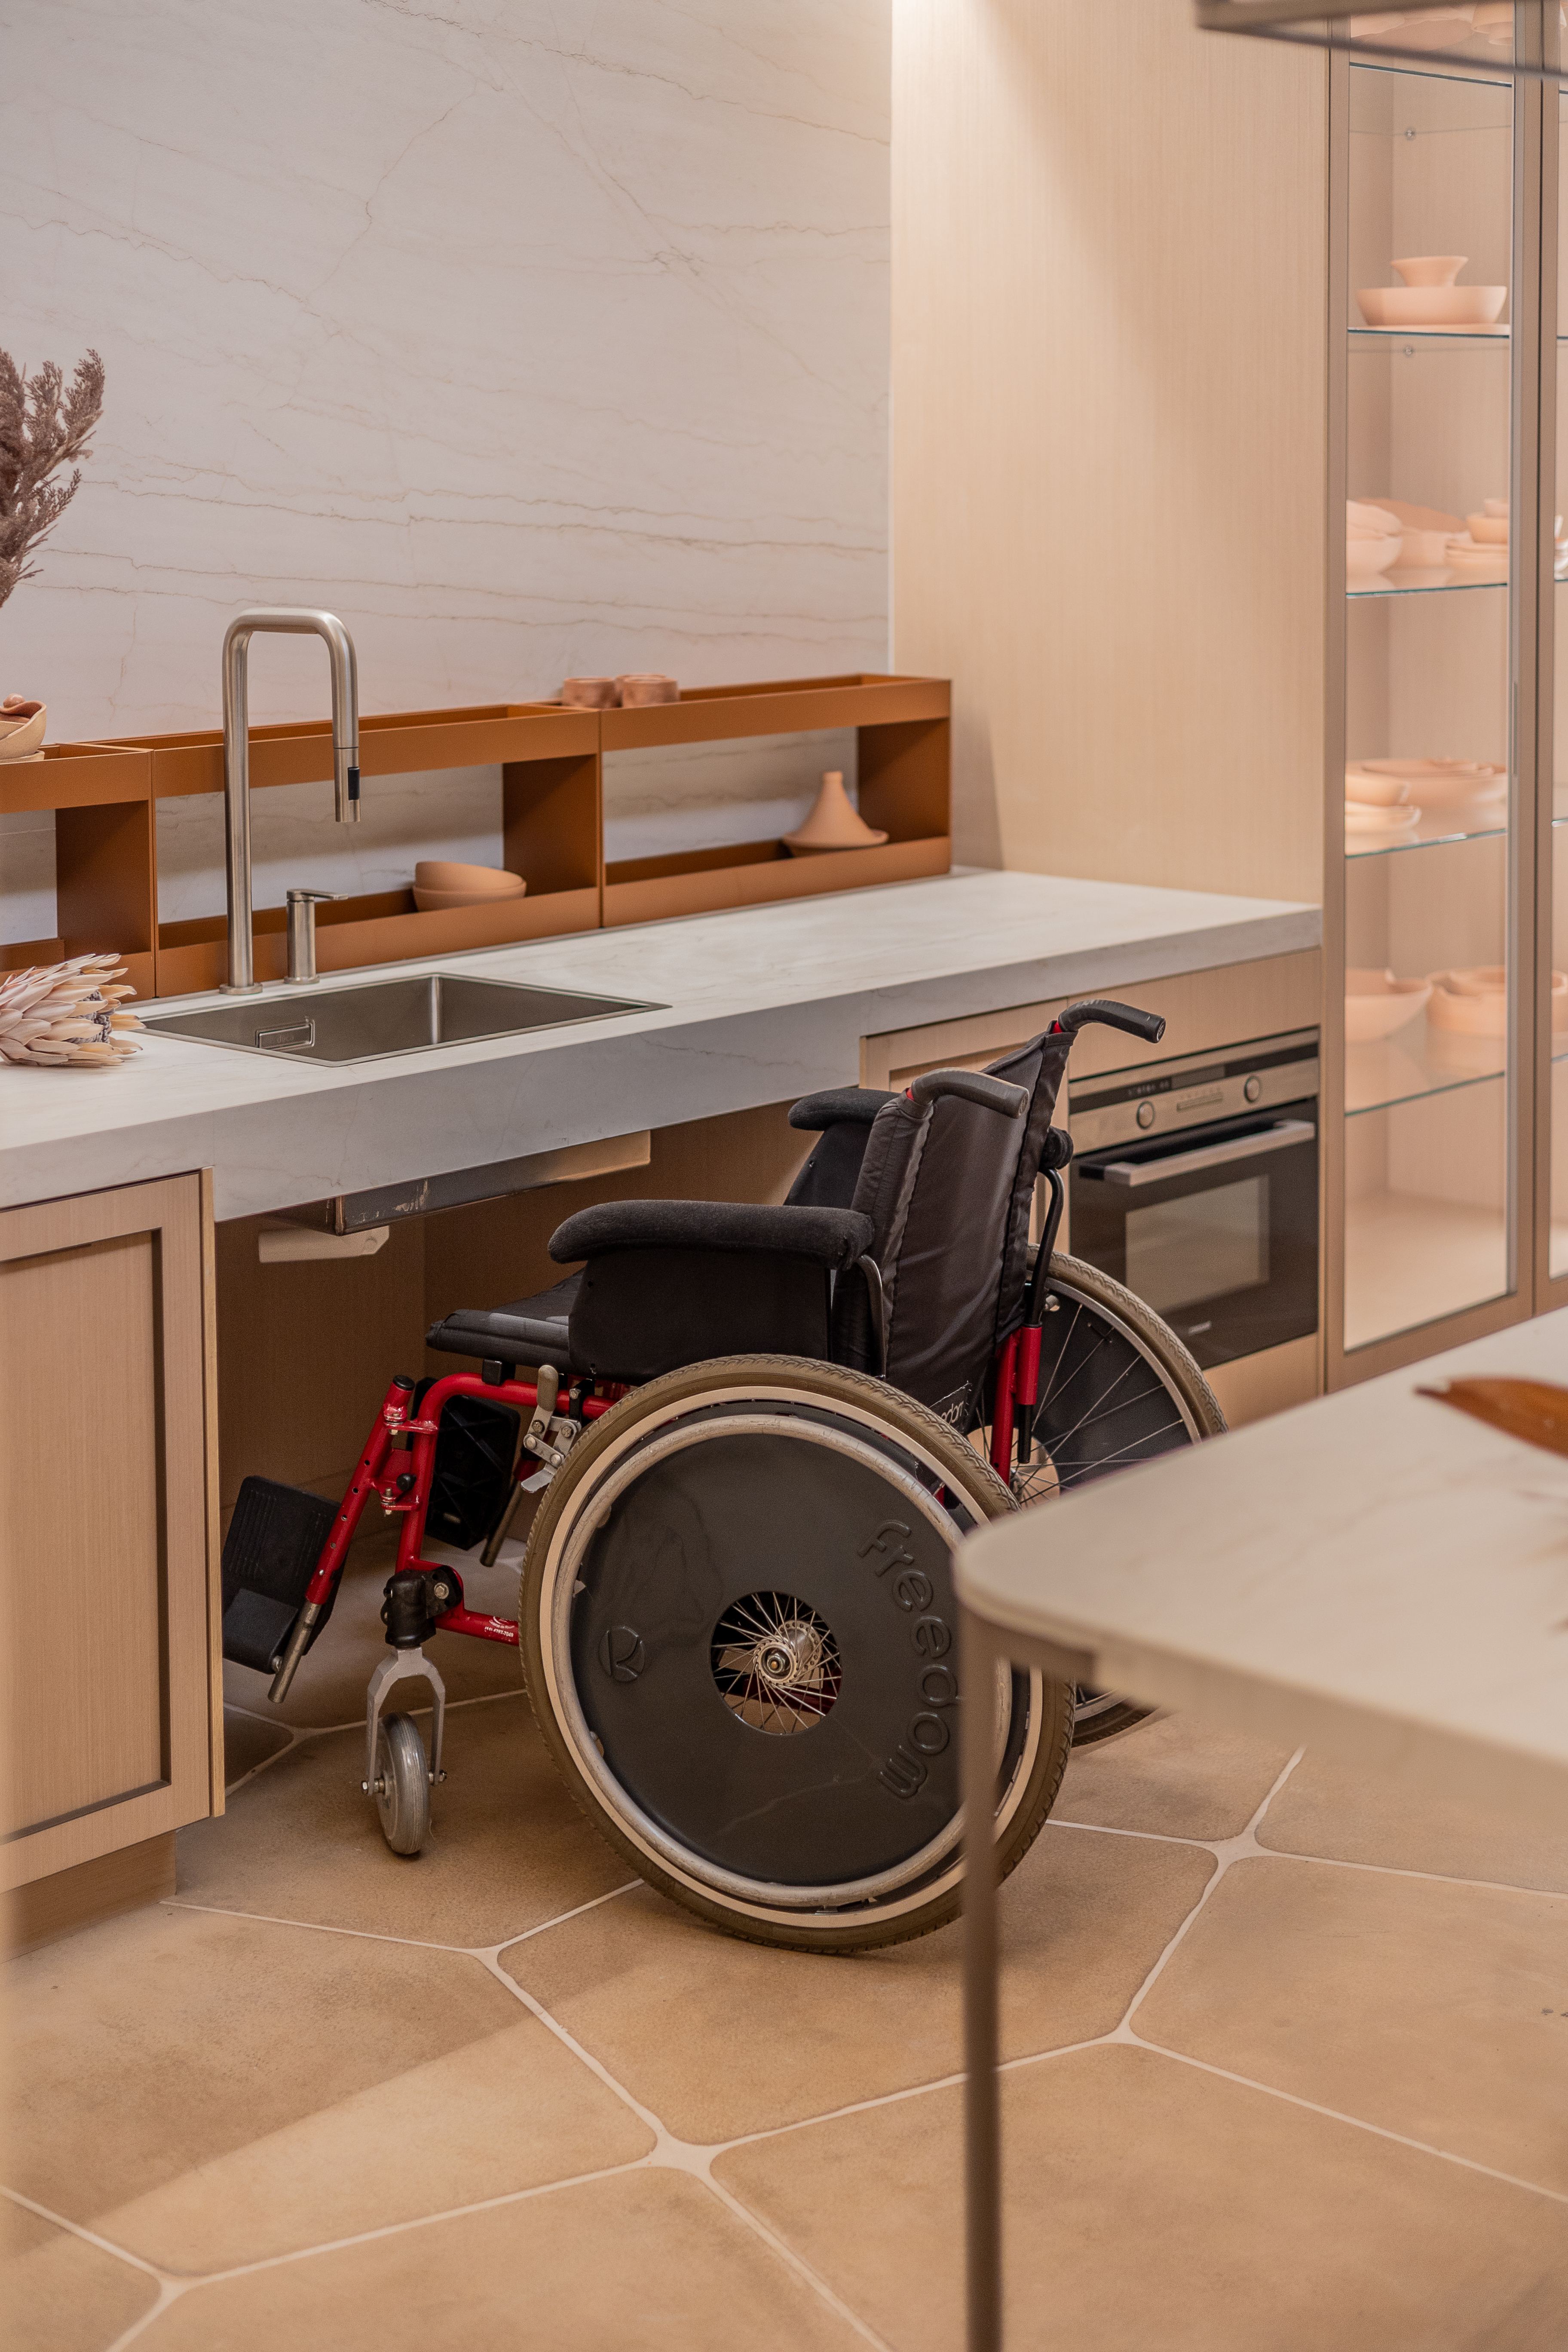 Estúdio de 88 m² traz recursos de acessibilidade de forma elegante e estética. Projeto de ADVP para a CASACOR São Paulo 2024. Na foto, cozinha, cadeira de rodas.